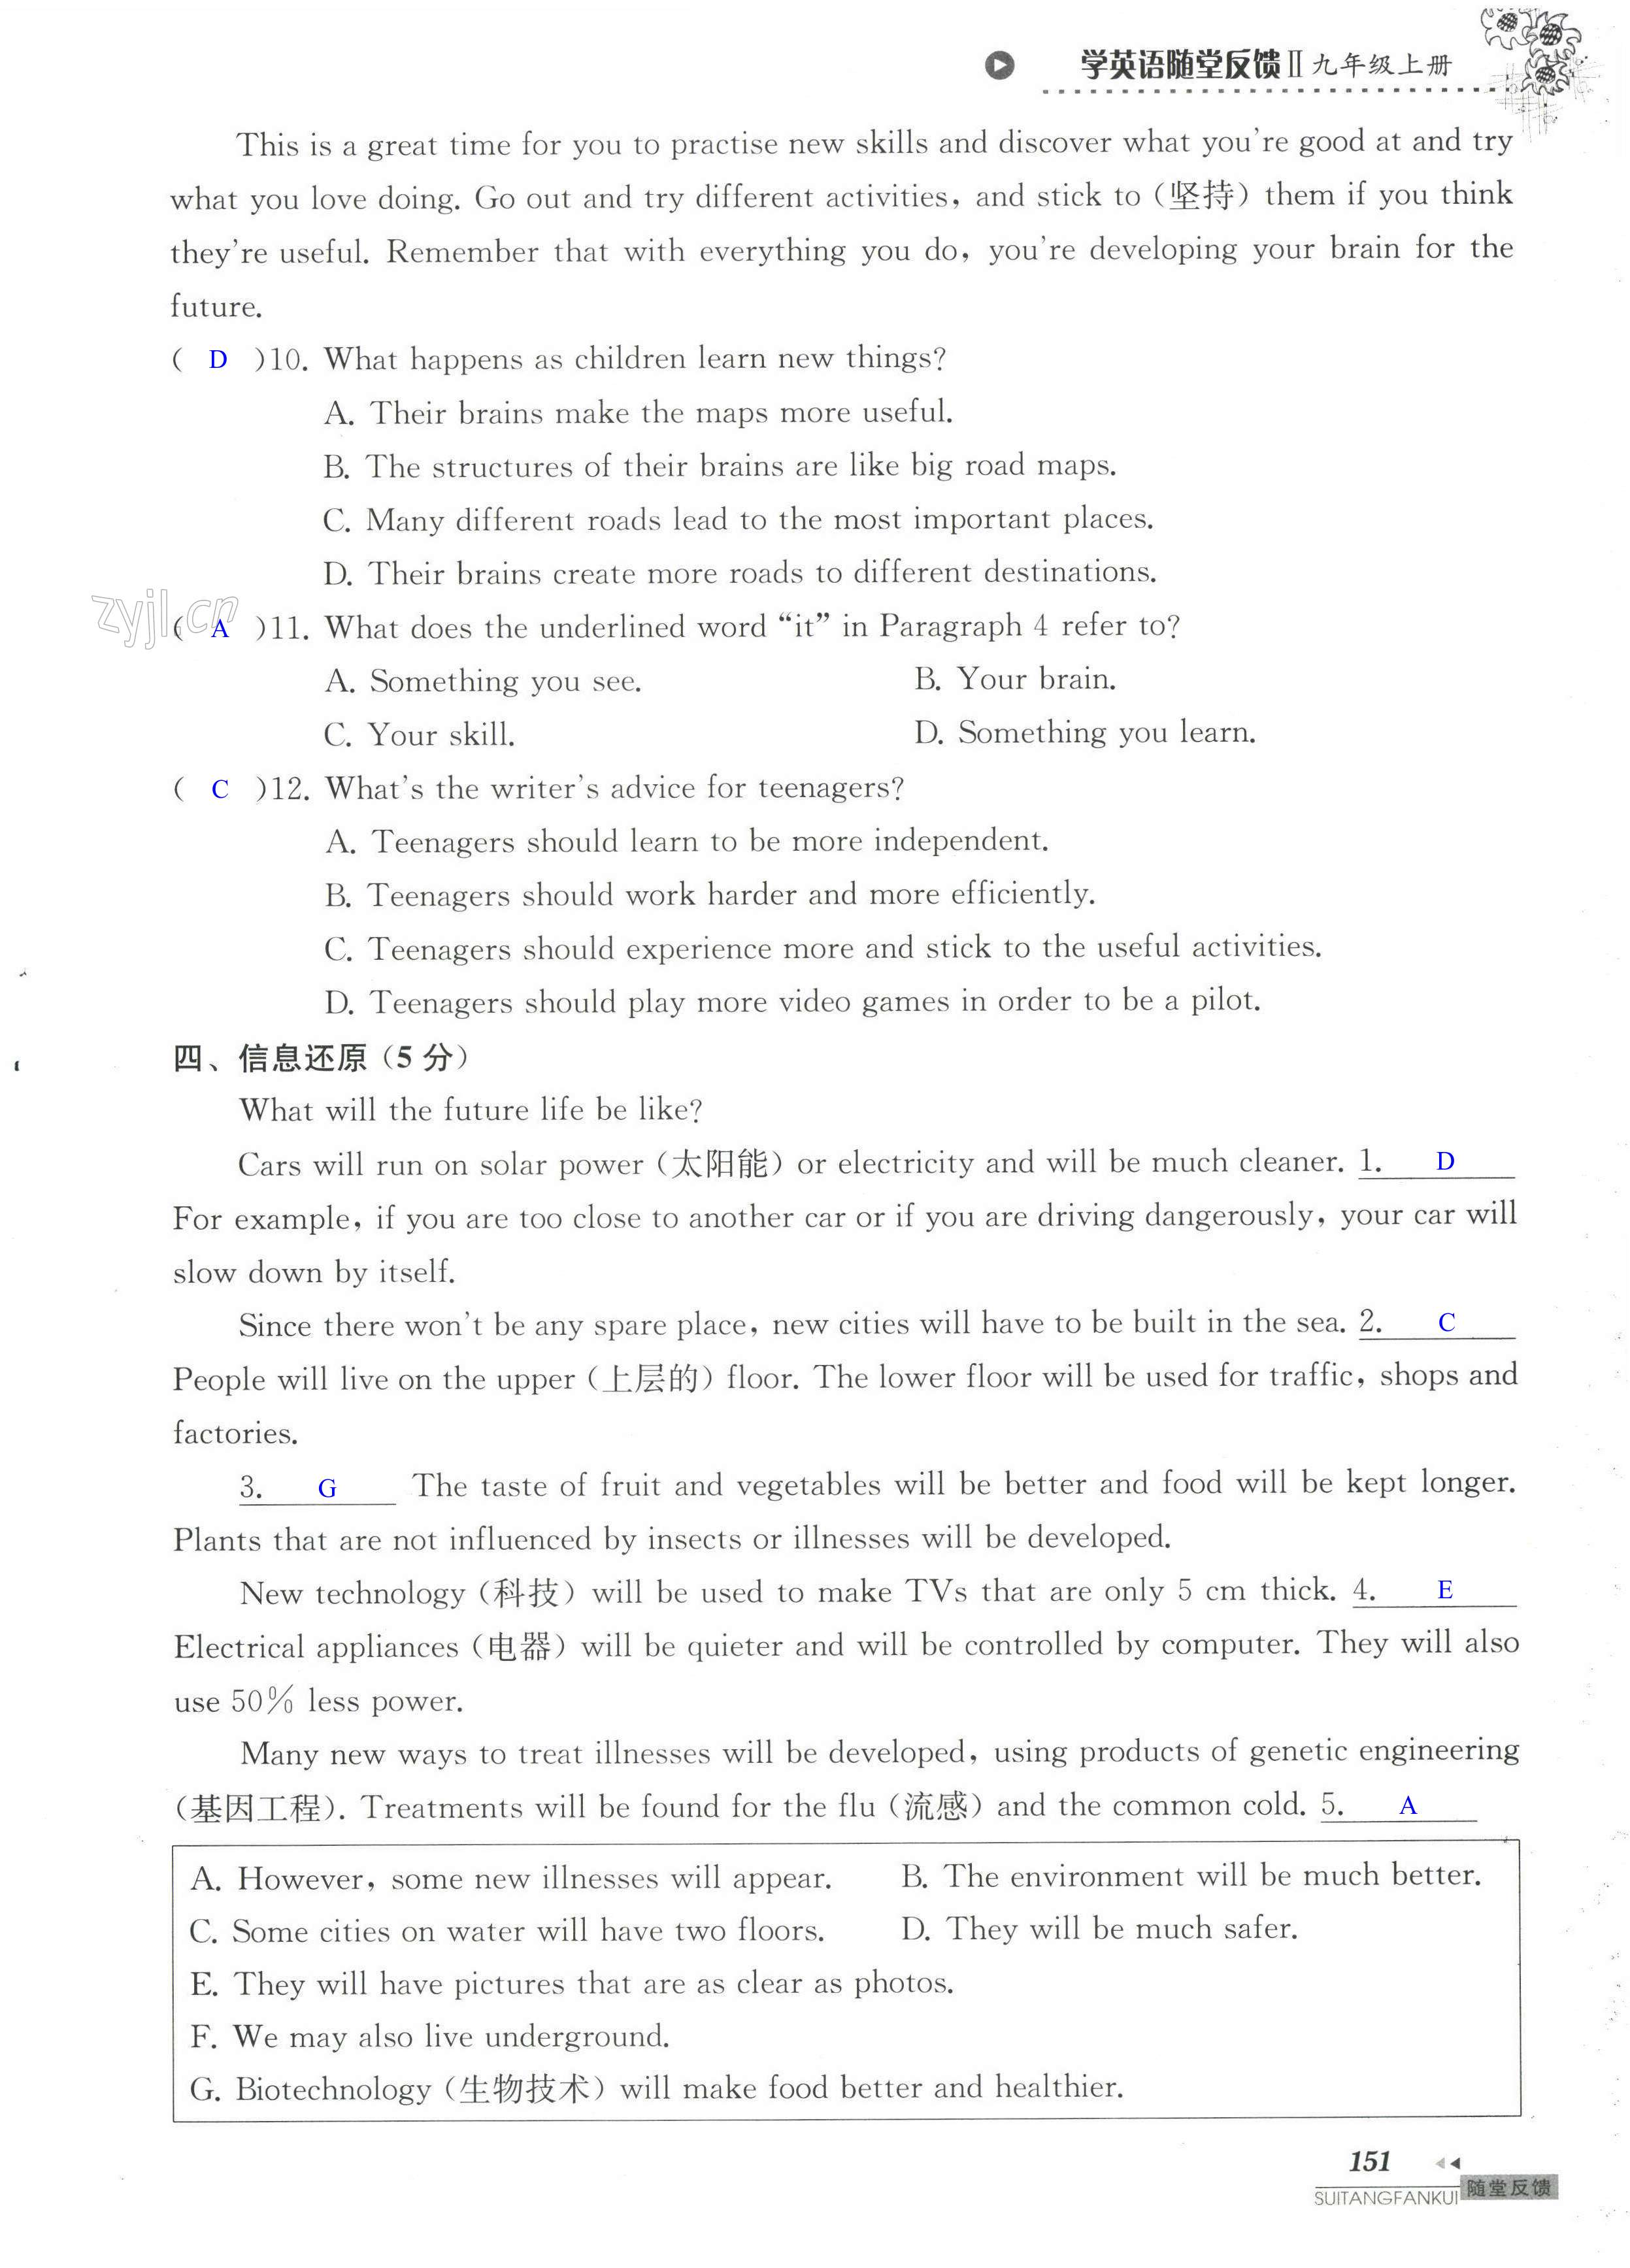 单元综合测试卷 Test for Unit 1 of 9A - 第151页